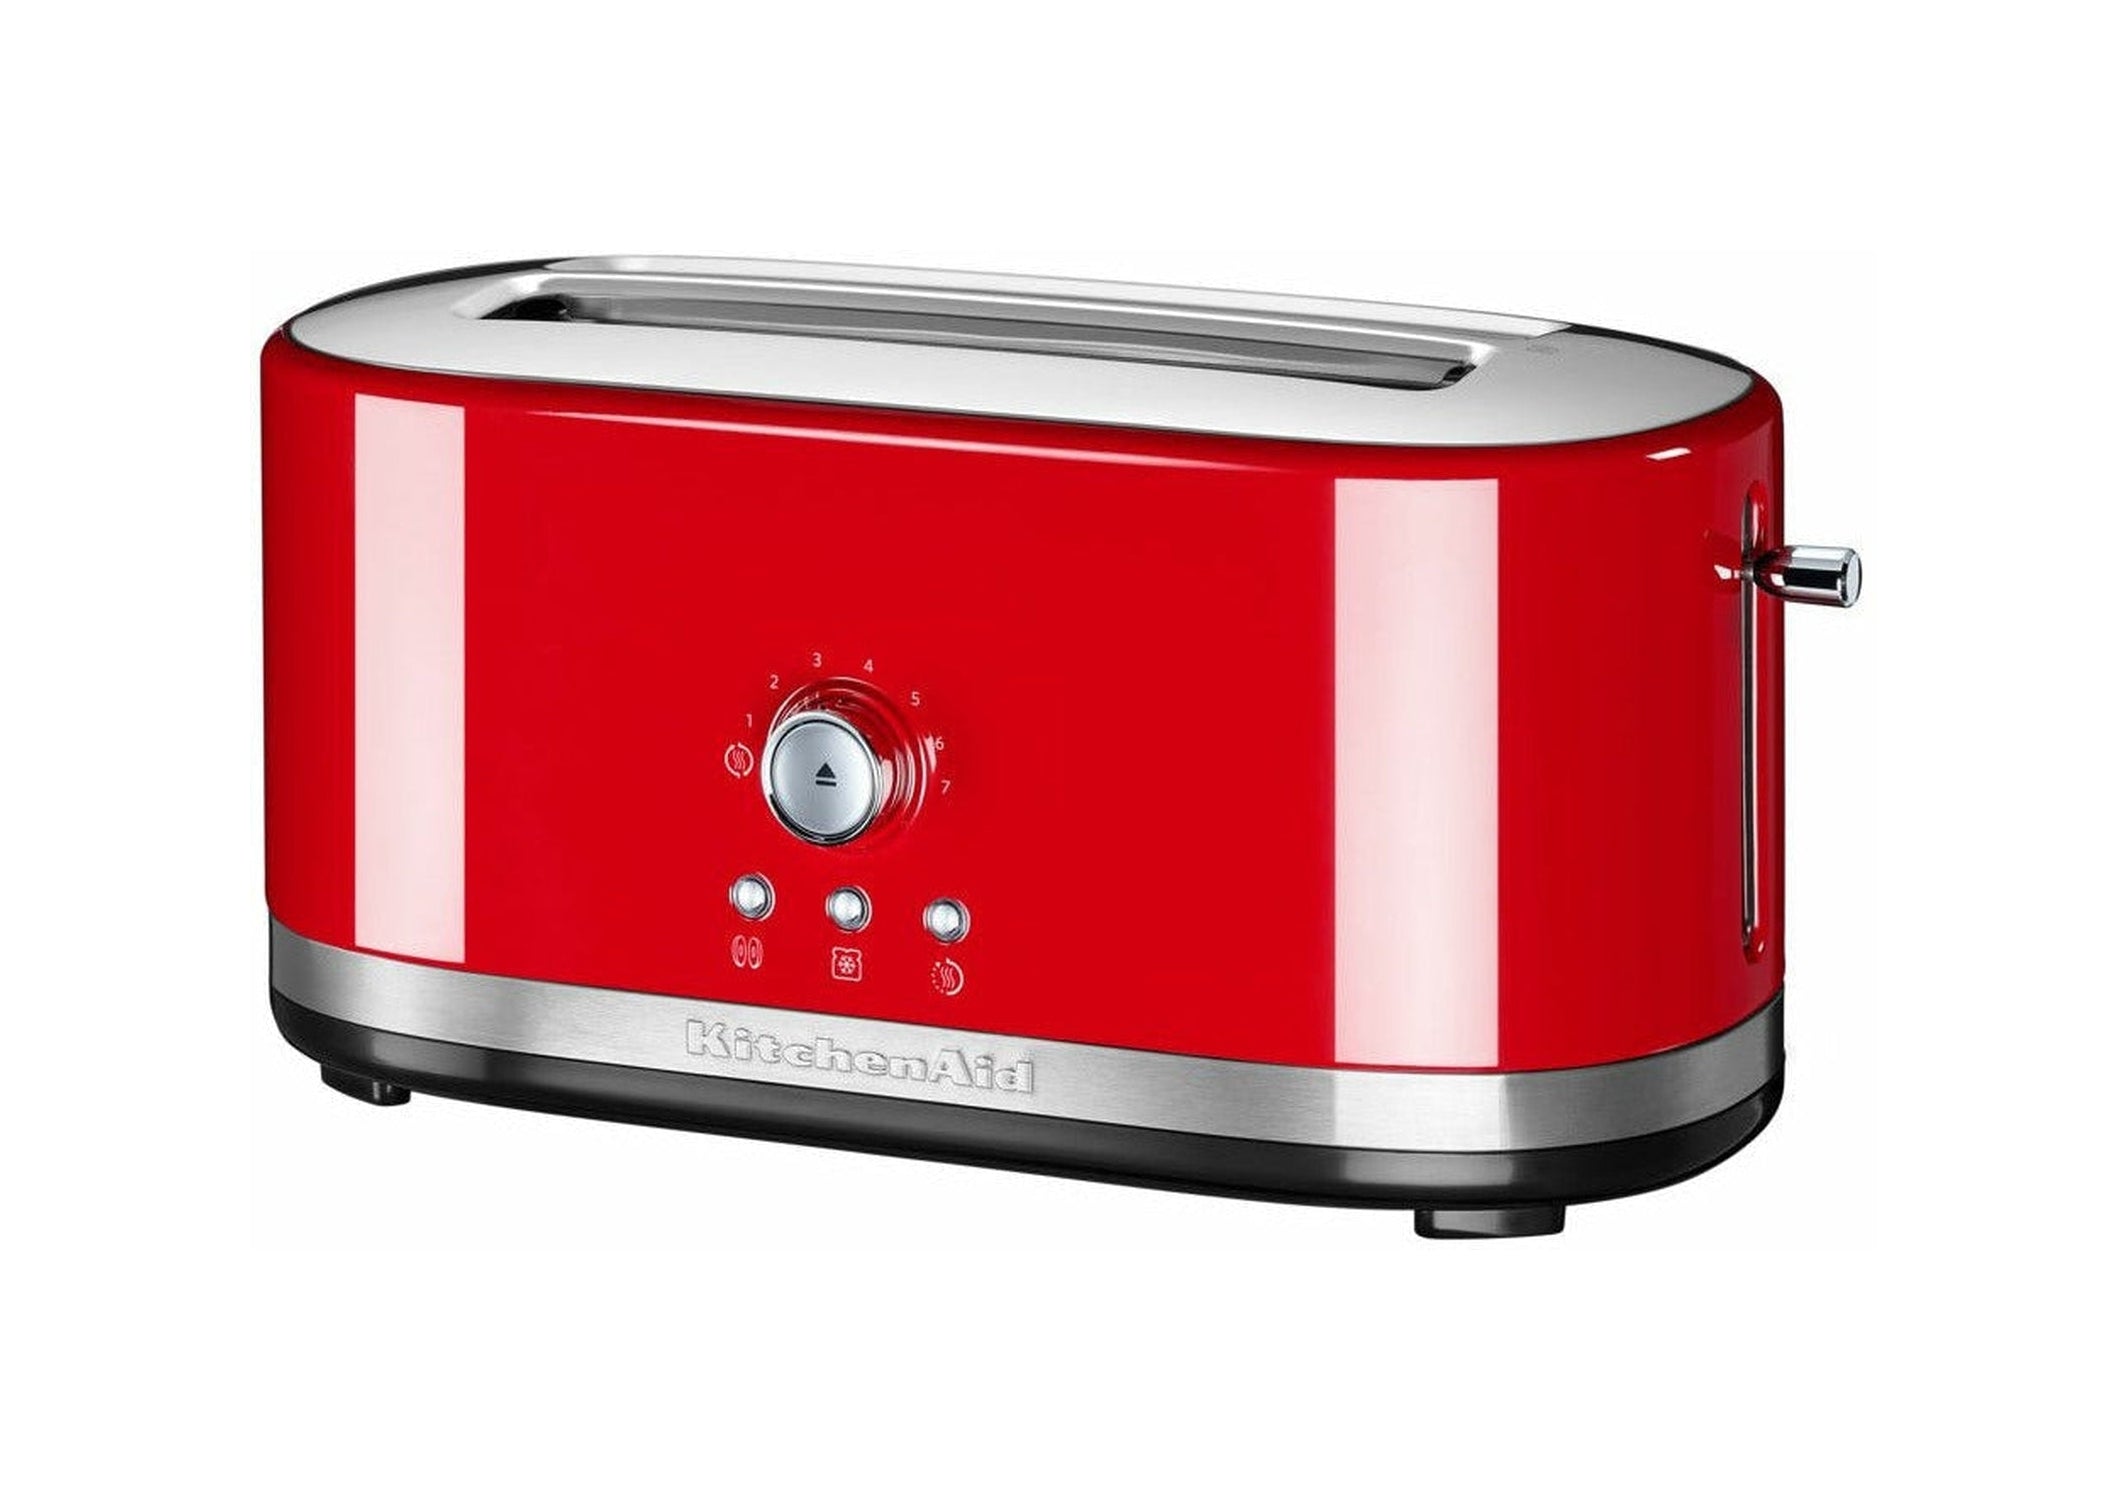 Kökhjälp 5 kmt2116 Manual Long Slot Toaster för 2 skivor, Empire Red